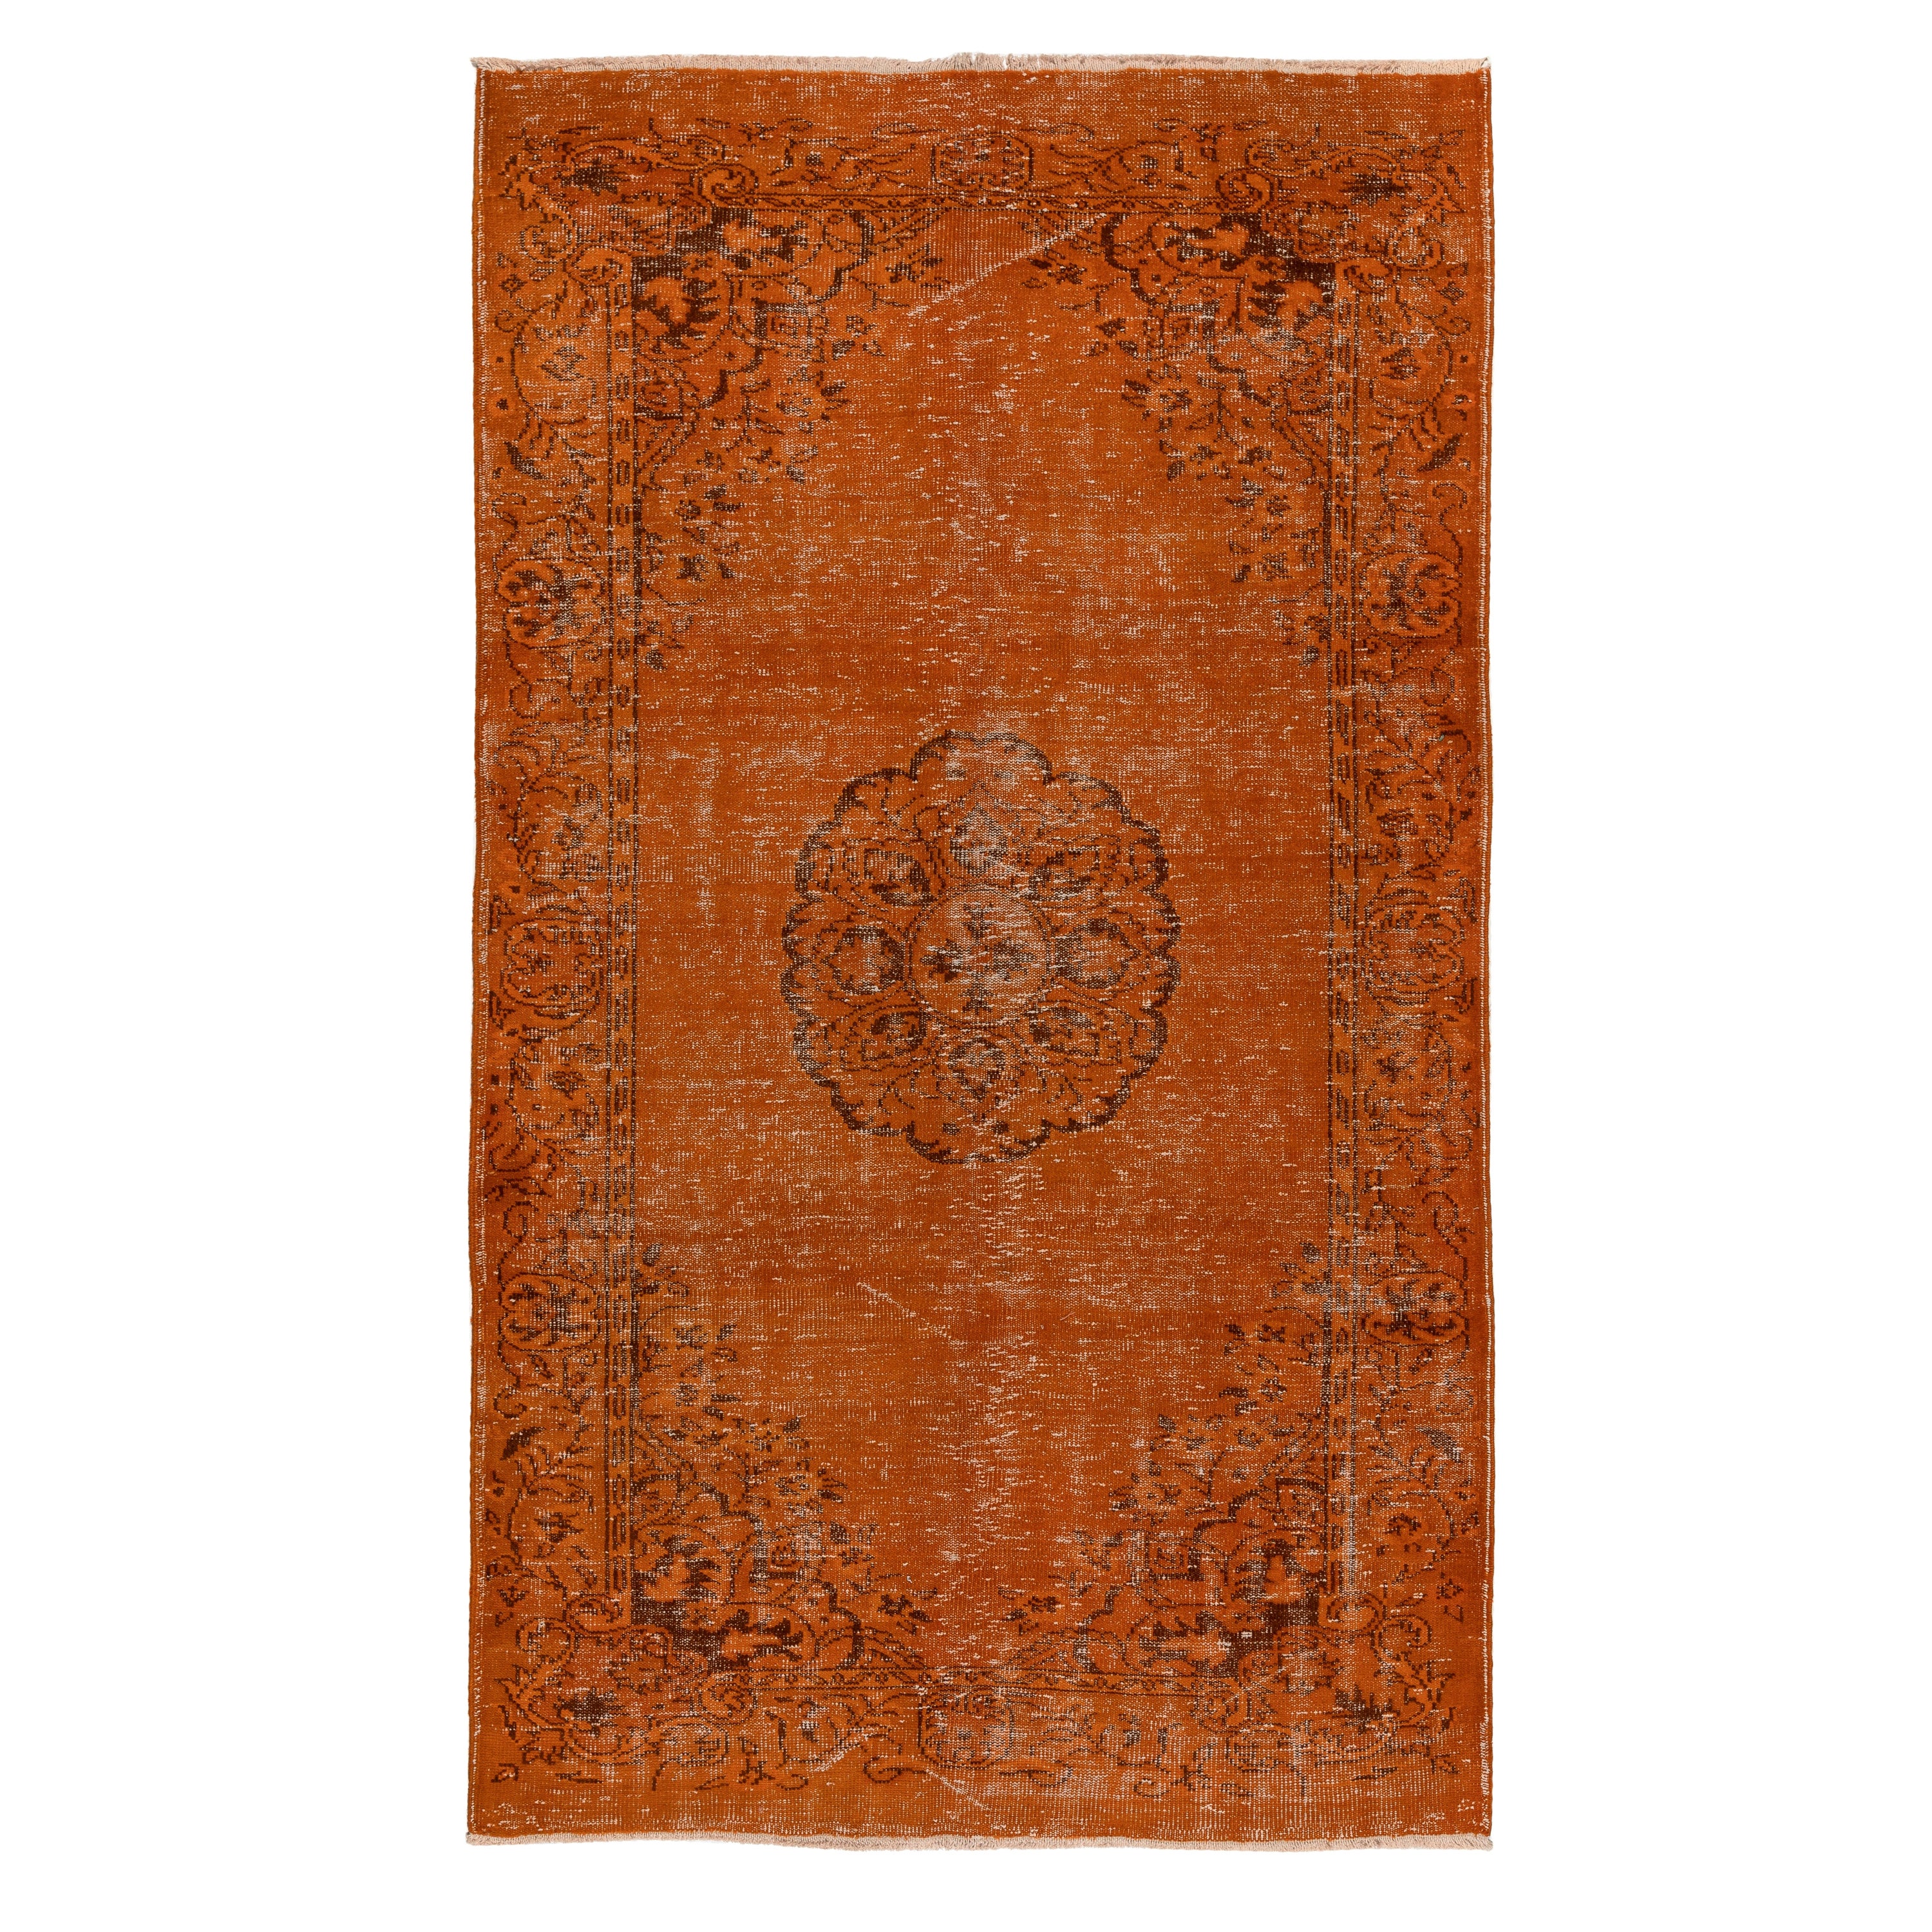 5.6x9.3 Ft Handgefertigter türkischer Vintage-Teppich in Orange, moderner Art déco-Teppich